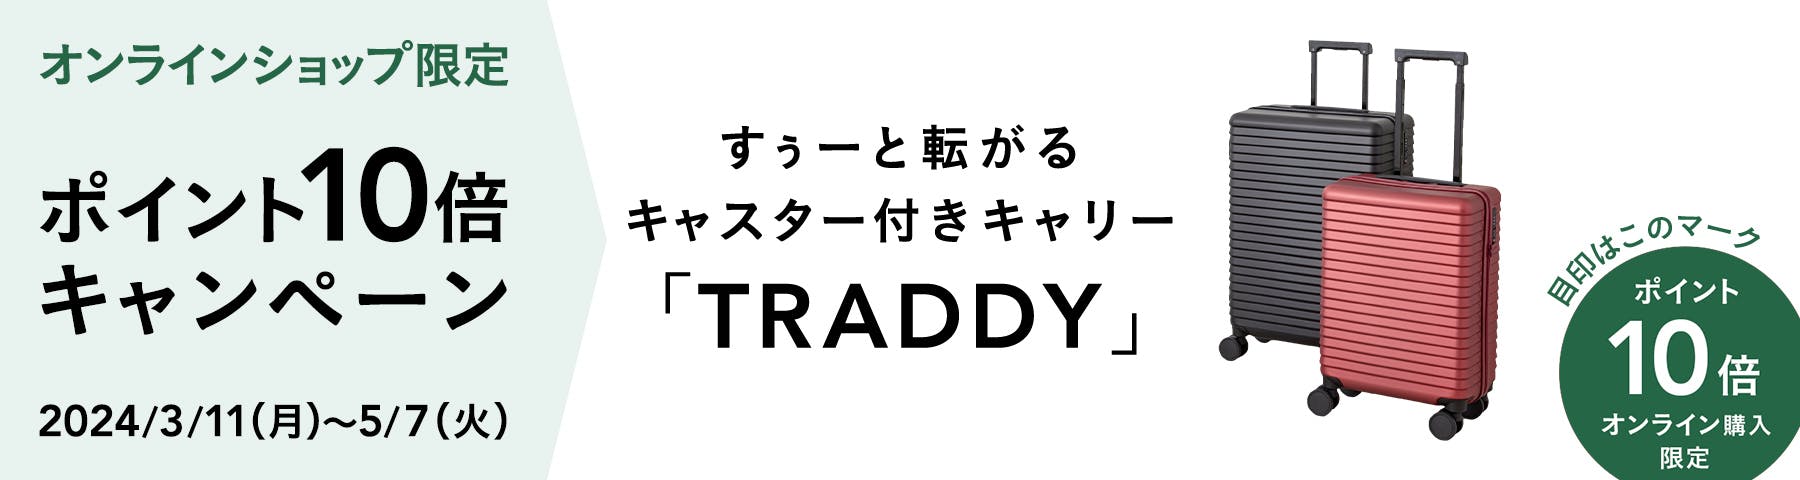 オンラインショップ限定 すぅーと転がるキャスター付きキャリー「TRADDY」ポイント10倍 キャンペーン